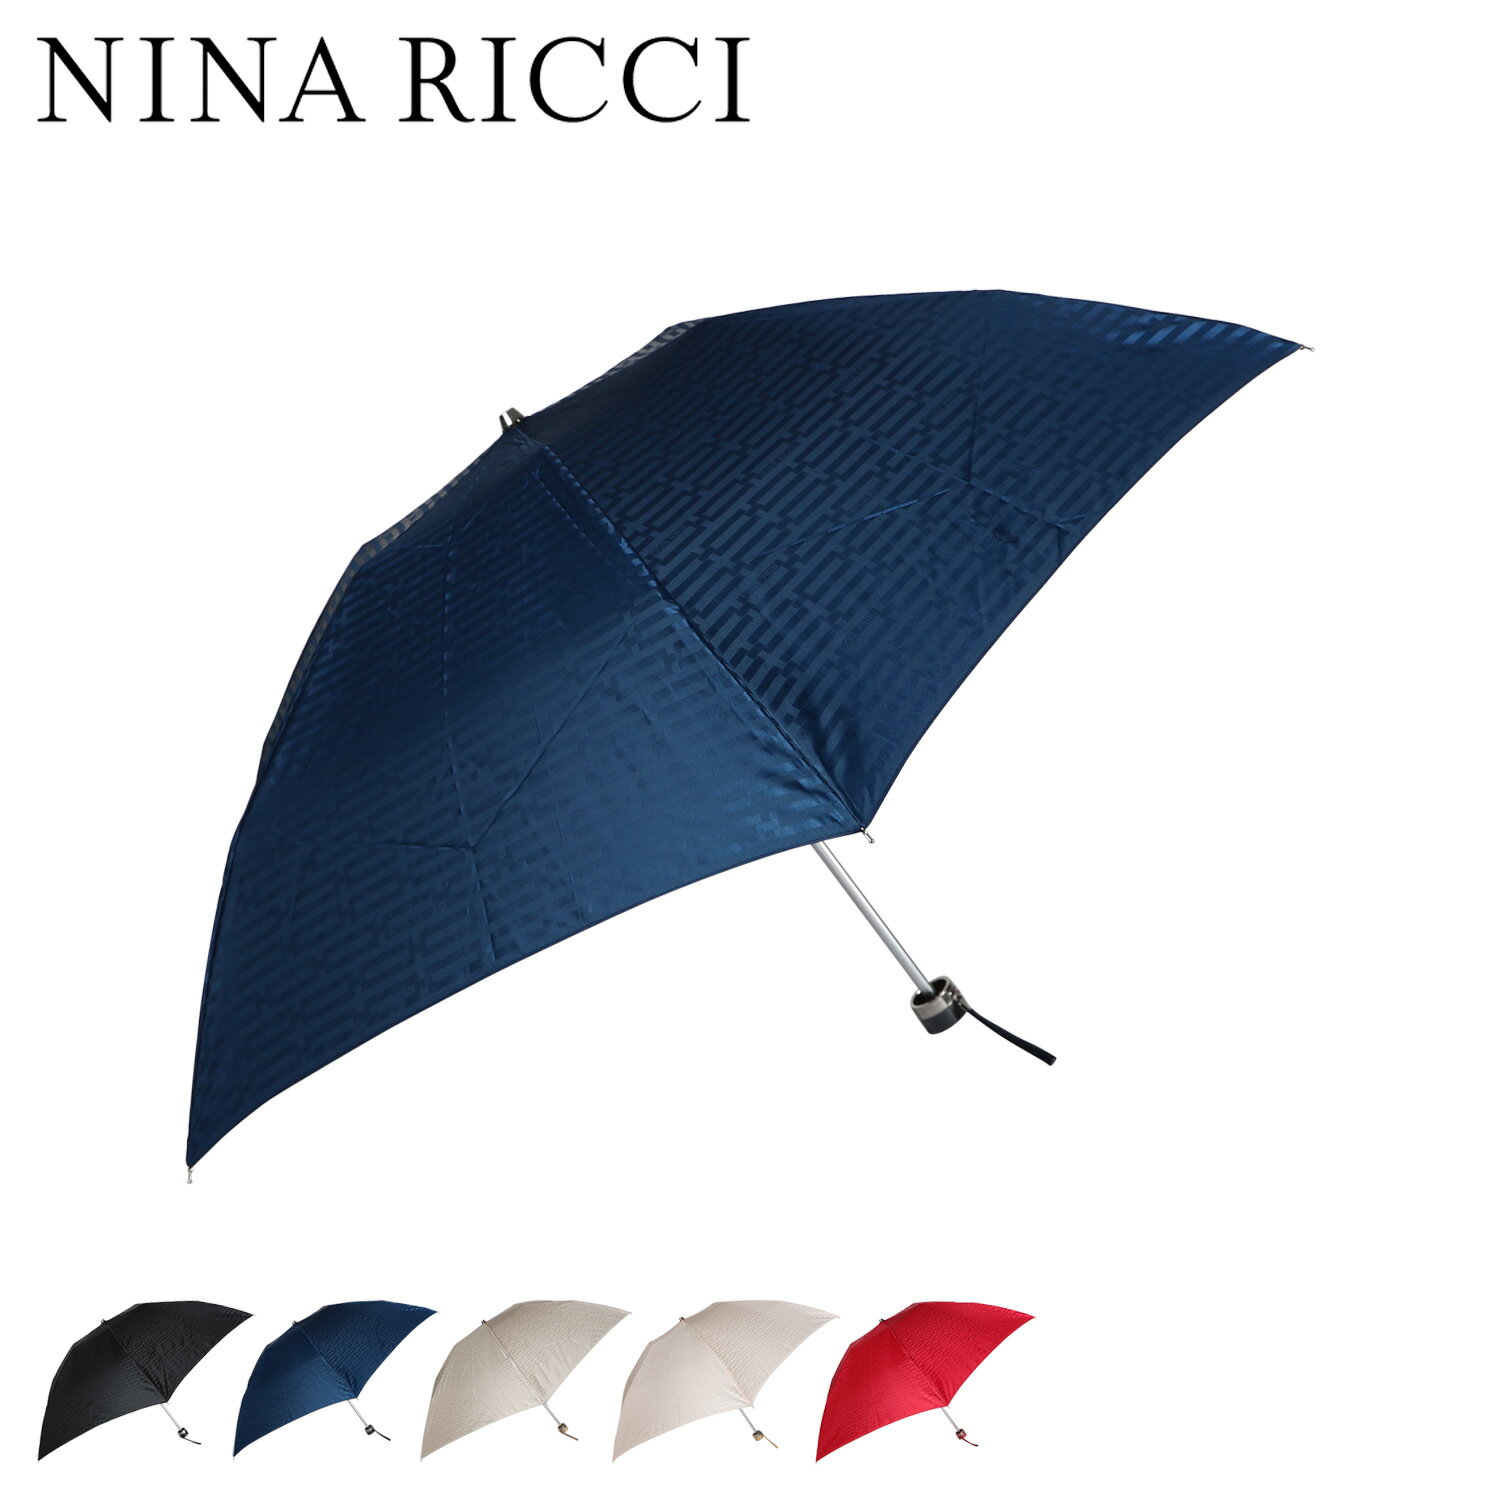 ニナリッチ NINA RICCI 折りたたみ傘 雨傘 レディース 軽量 コンパクト 折り畳み ブラック ネイビー ベージュ レッド ピンク 黒 1NR 17001